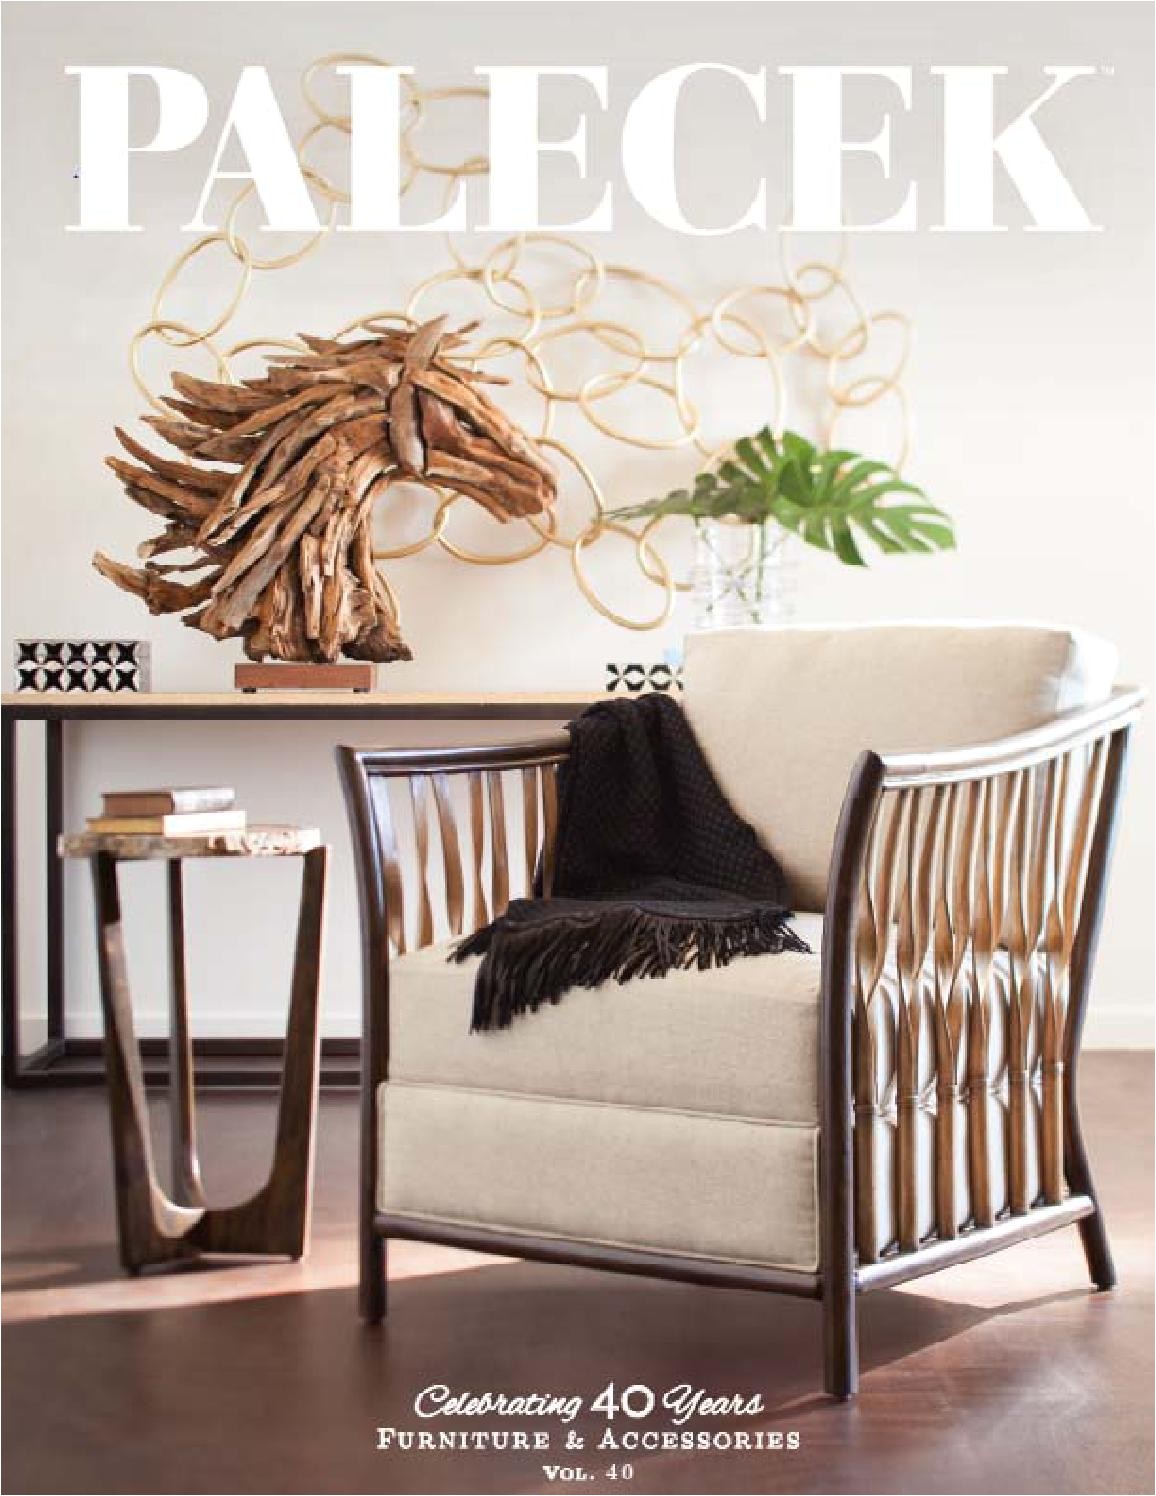 palecek furniture accessories catalog volume 40 by palecekdesign issuu